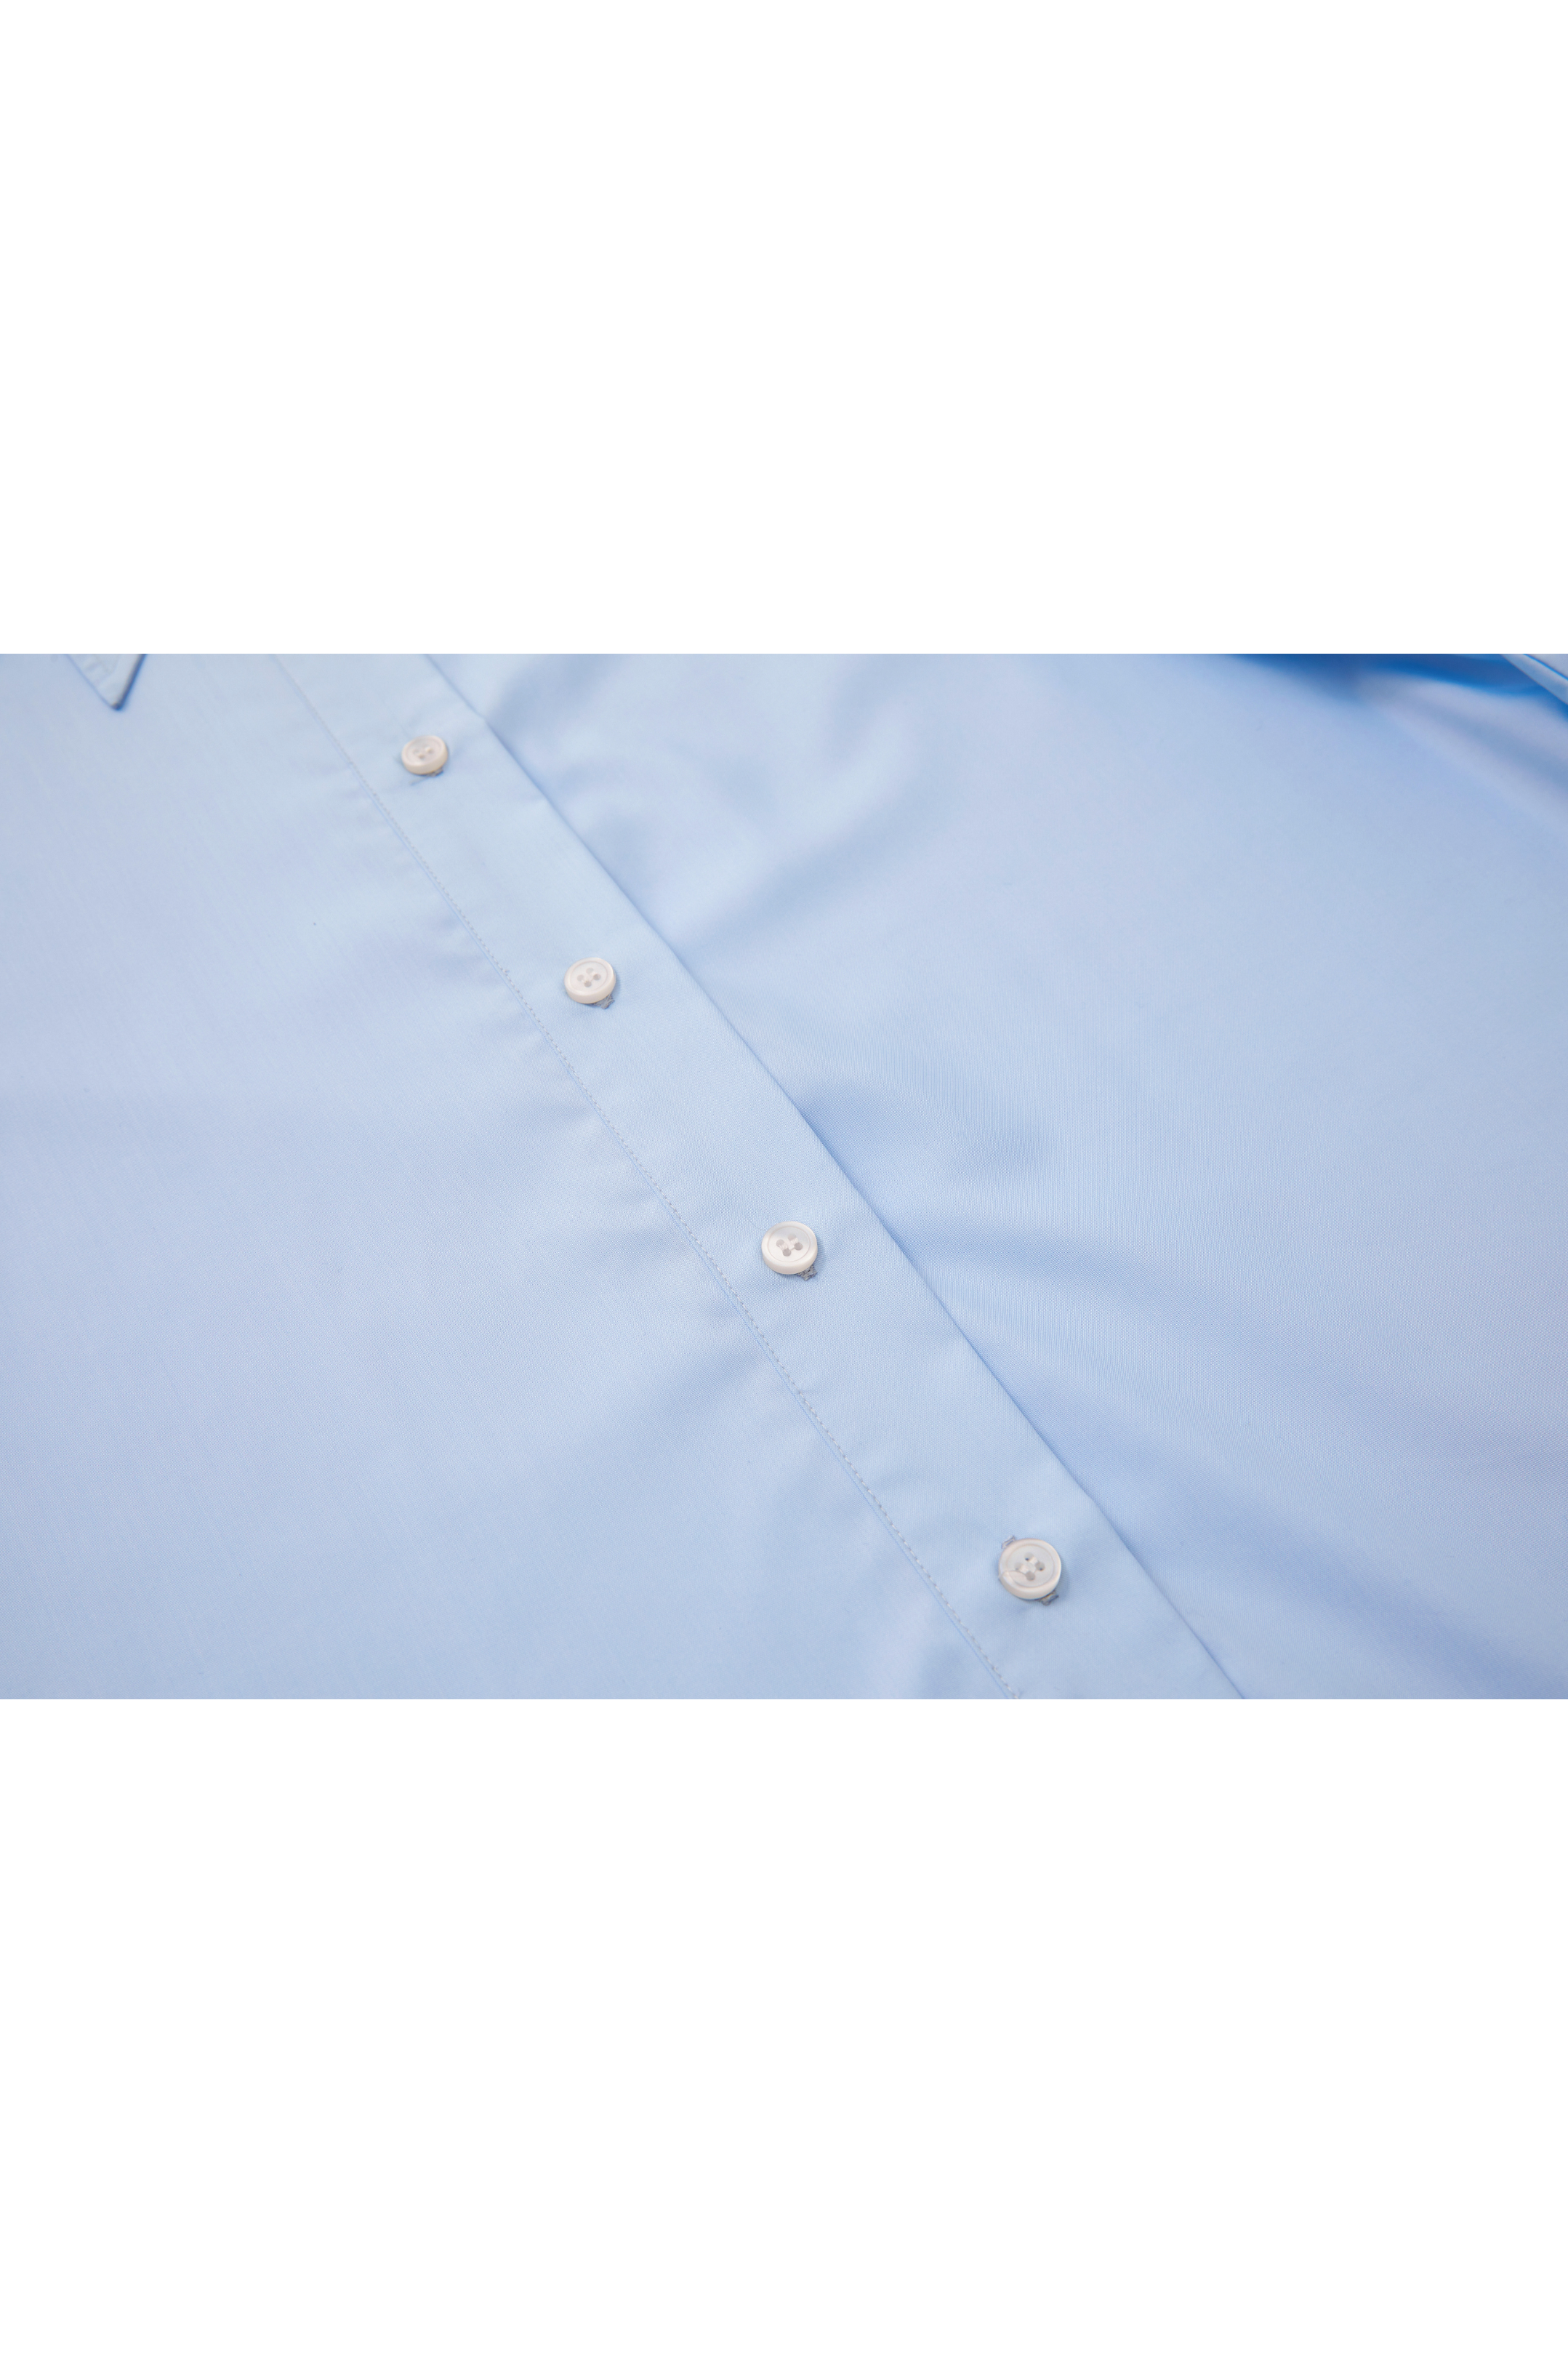 BASIC SMOOTH COLOR SHIRT / ベーシックスムースカラーシャツ